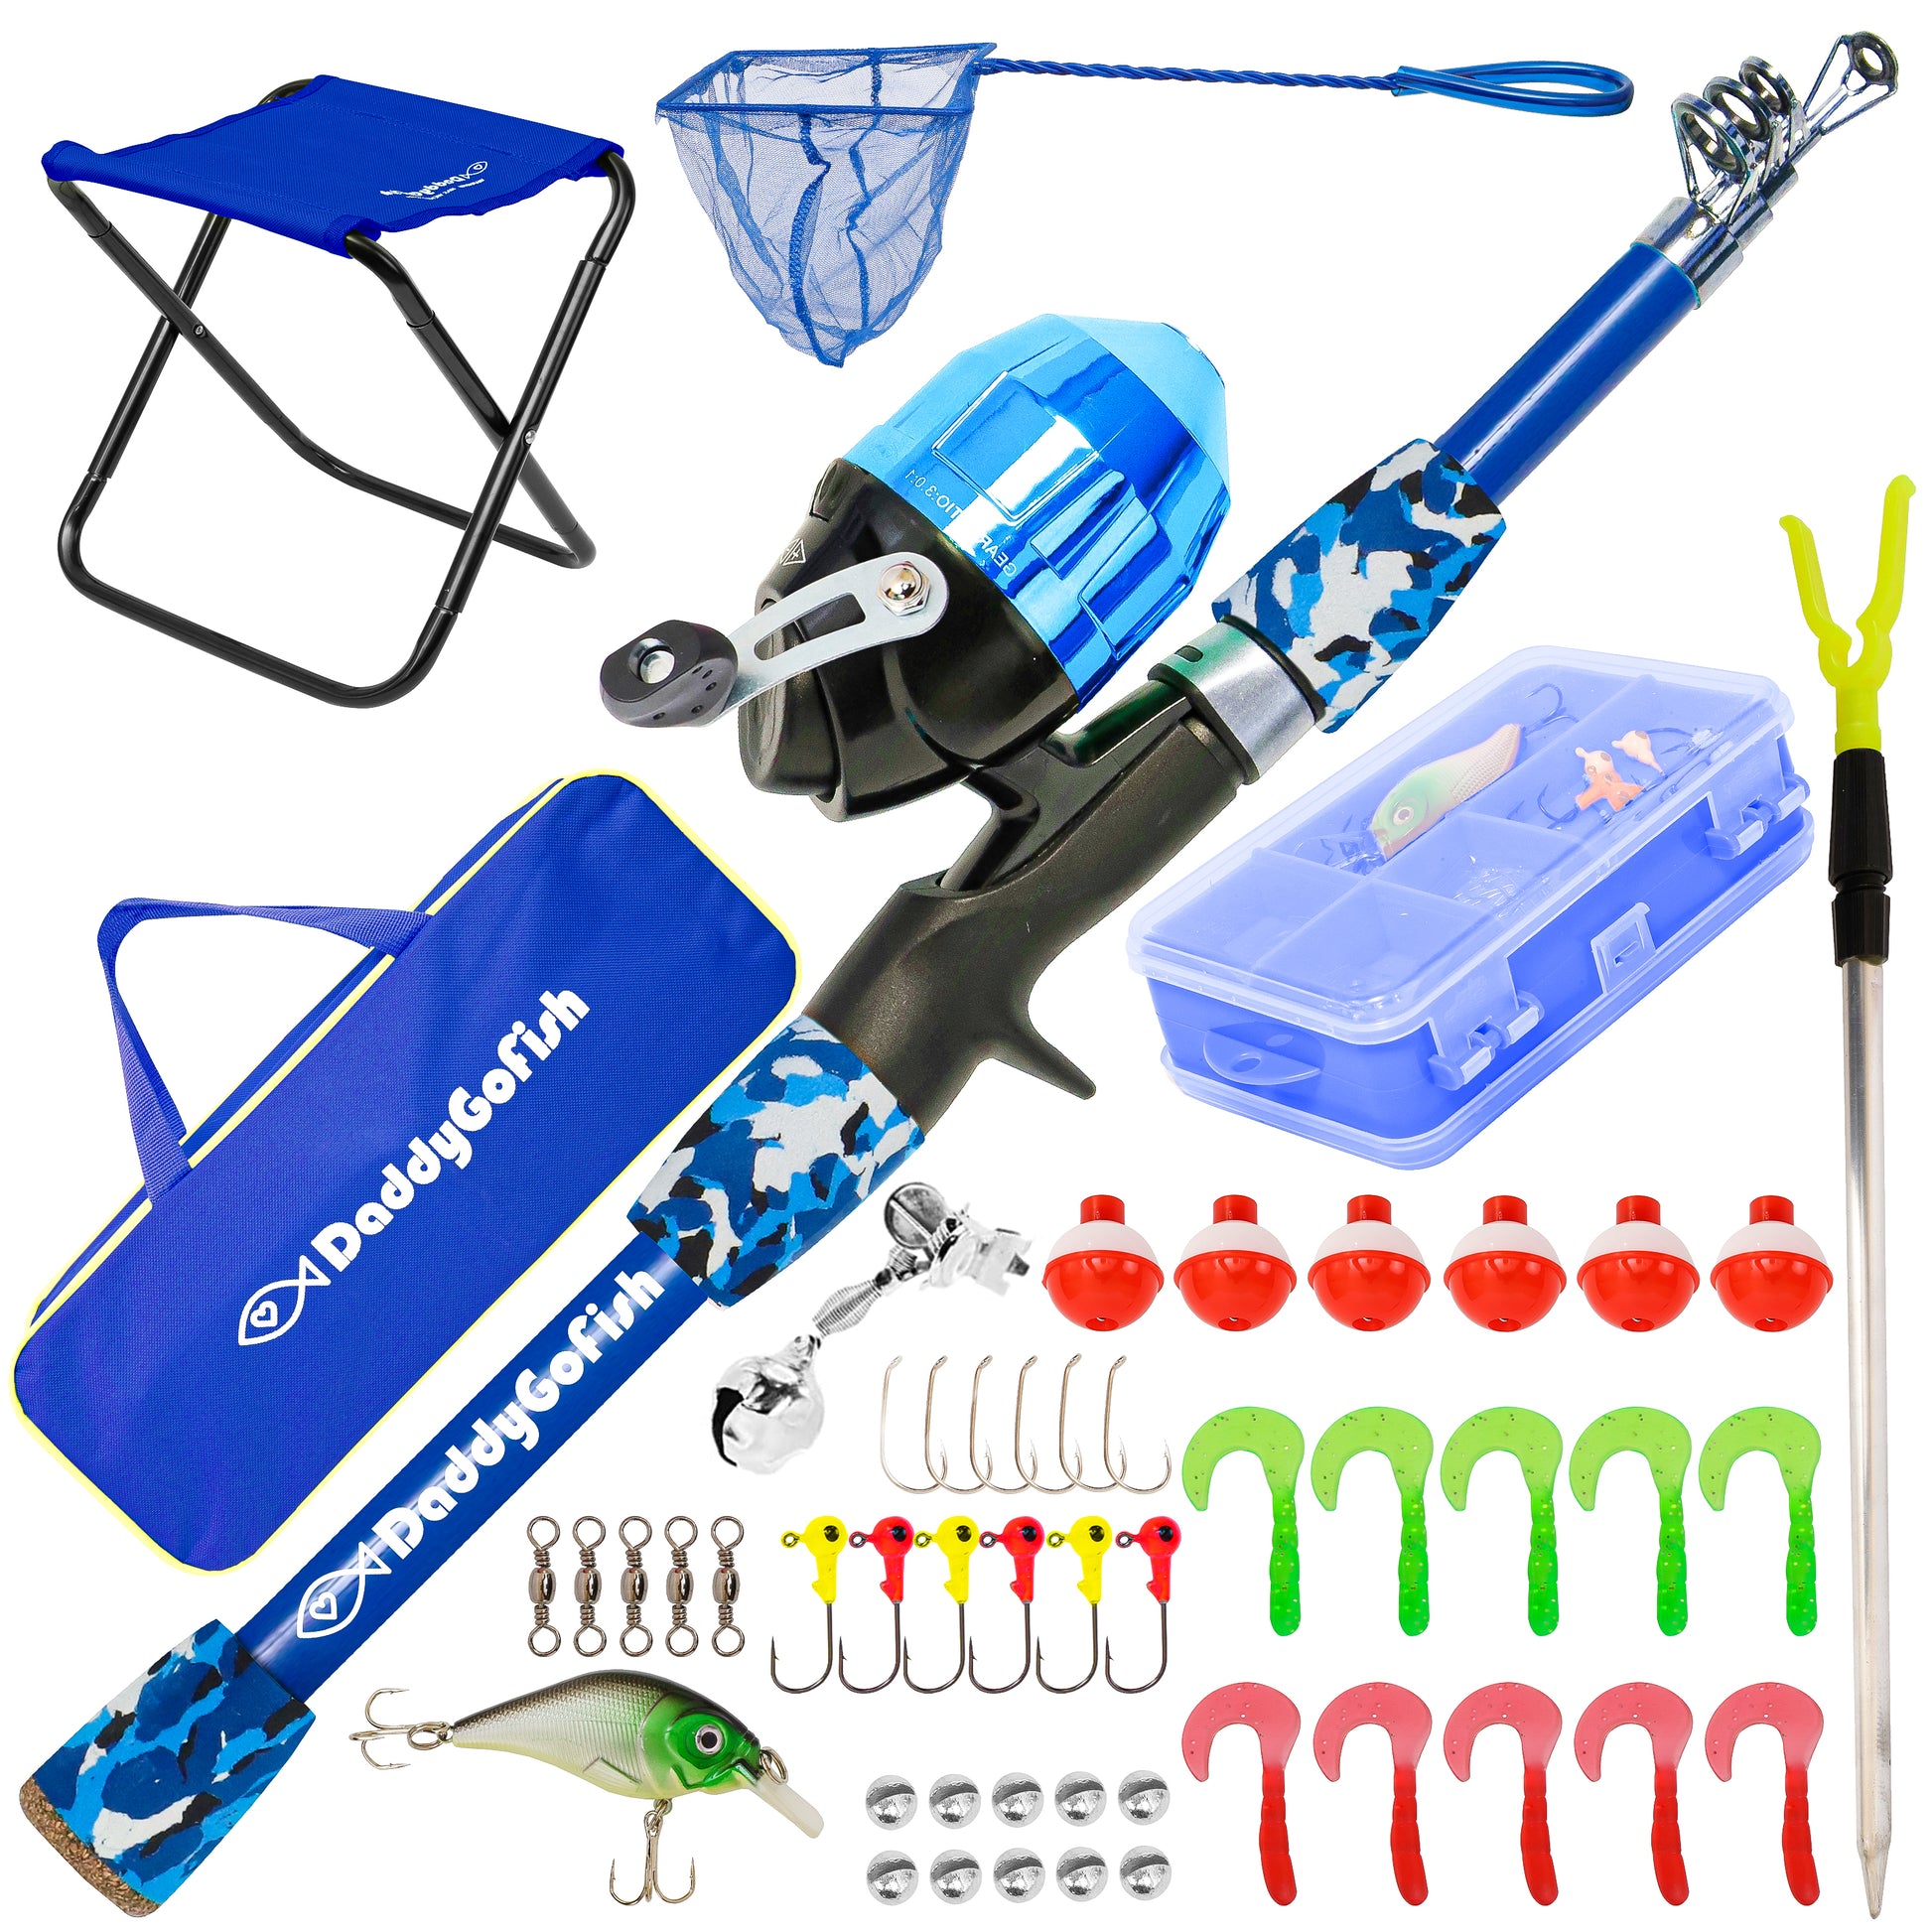 LEOFISHING Portable Kids Fishing Rod Set 2Pack Telescopic Fishing